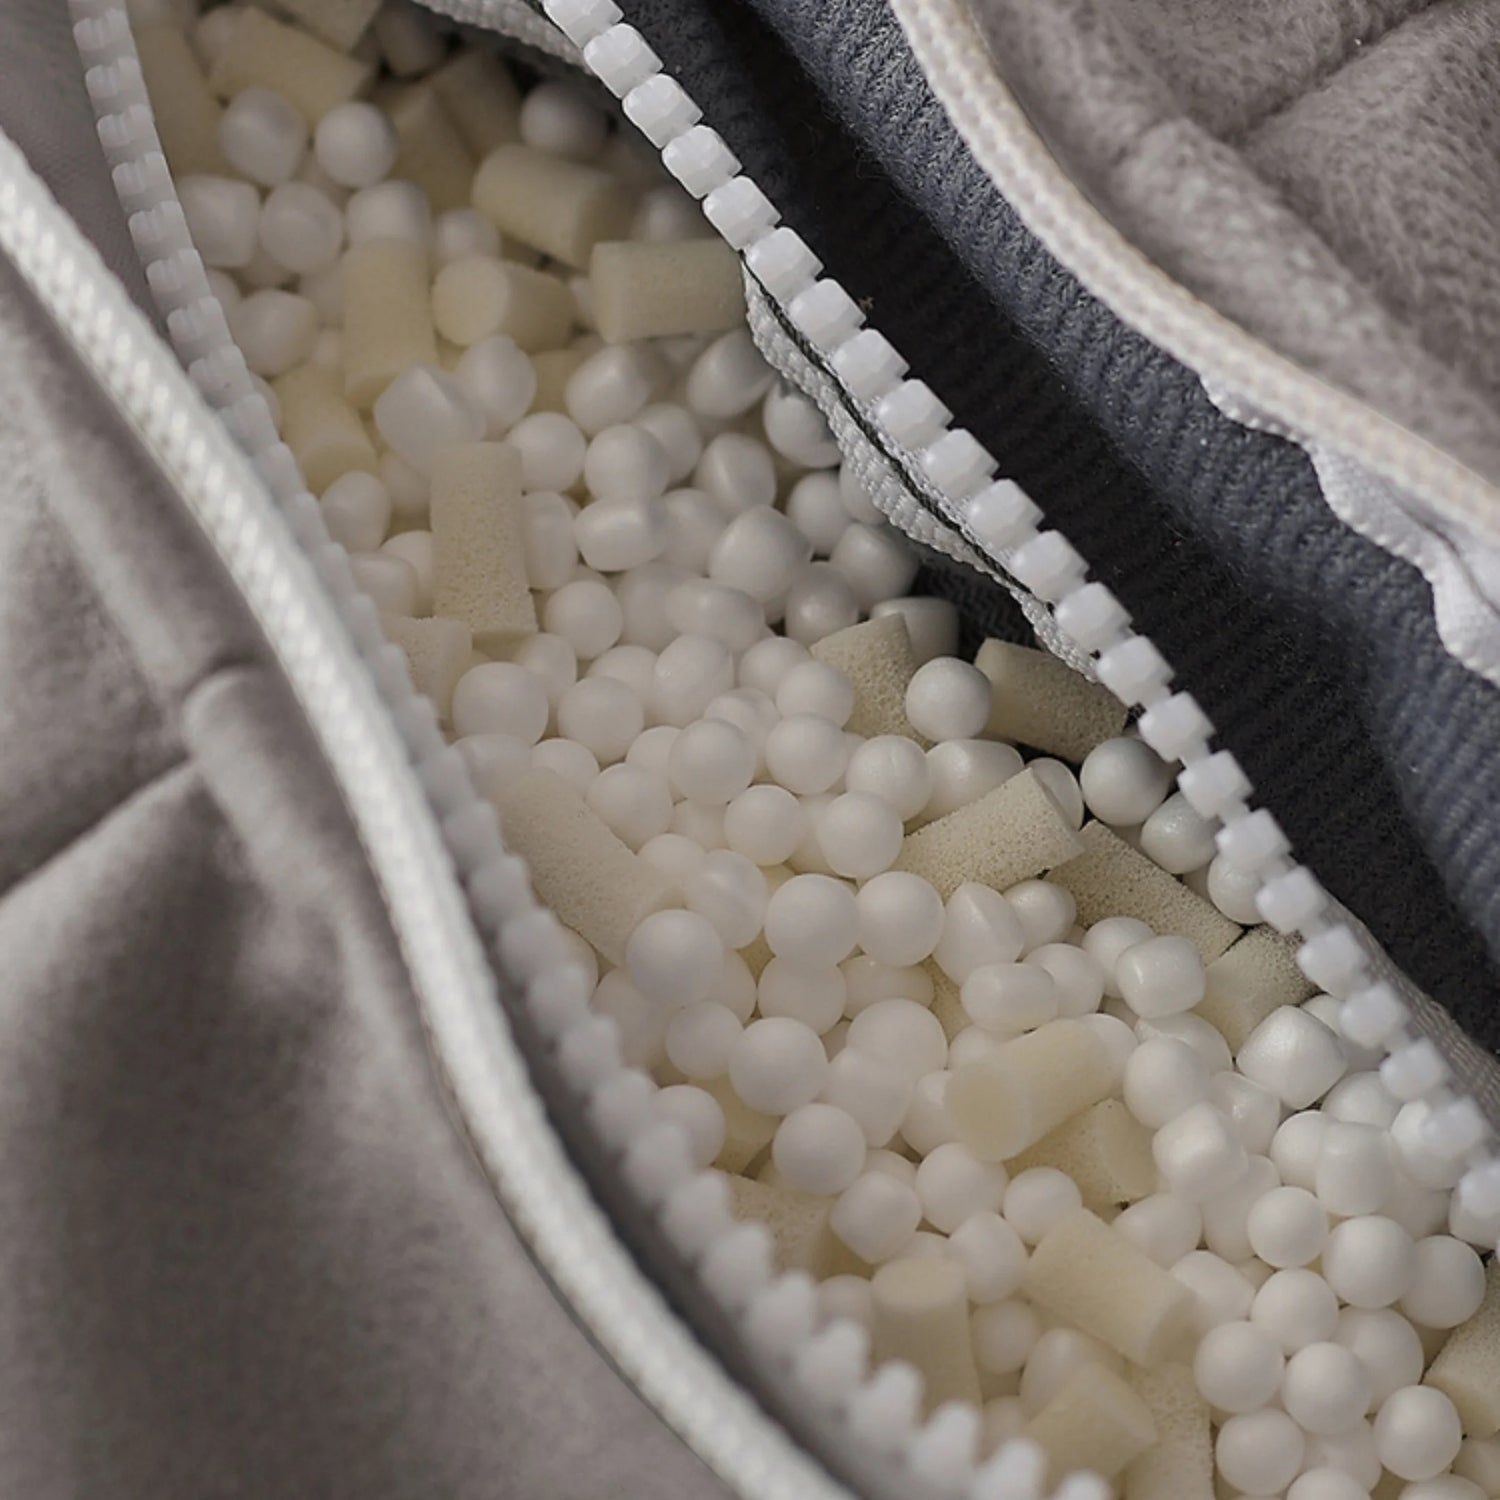 Polystyrene beads (EPS) VS Shredded Foam? What's really the